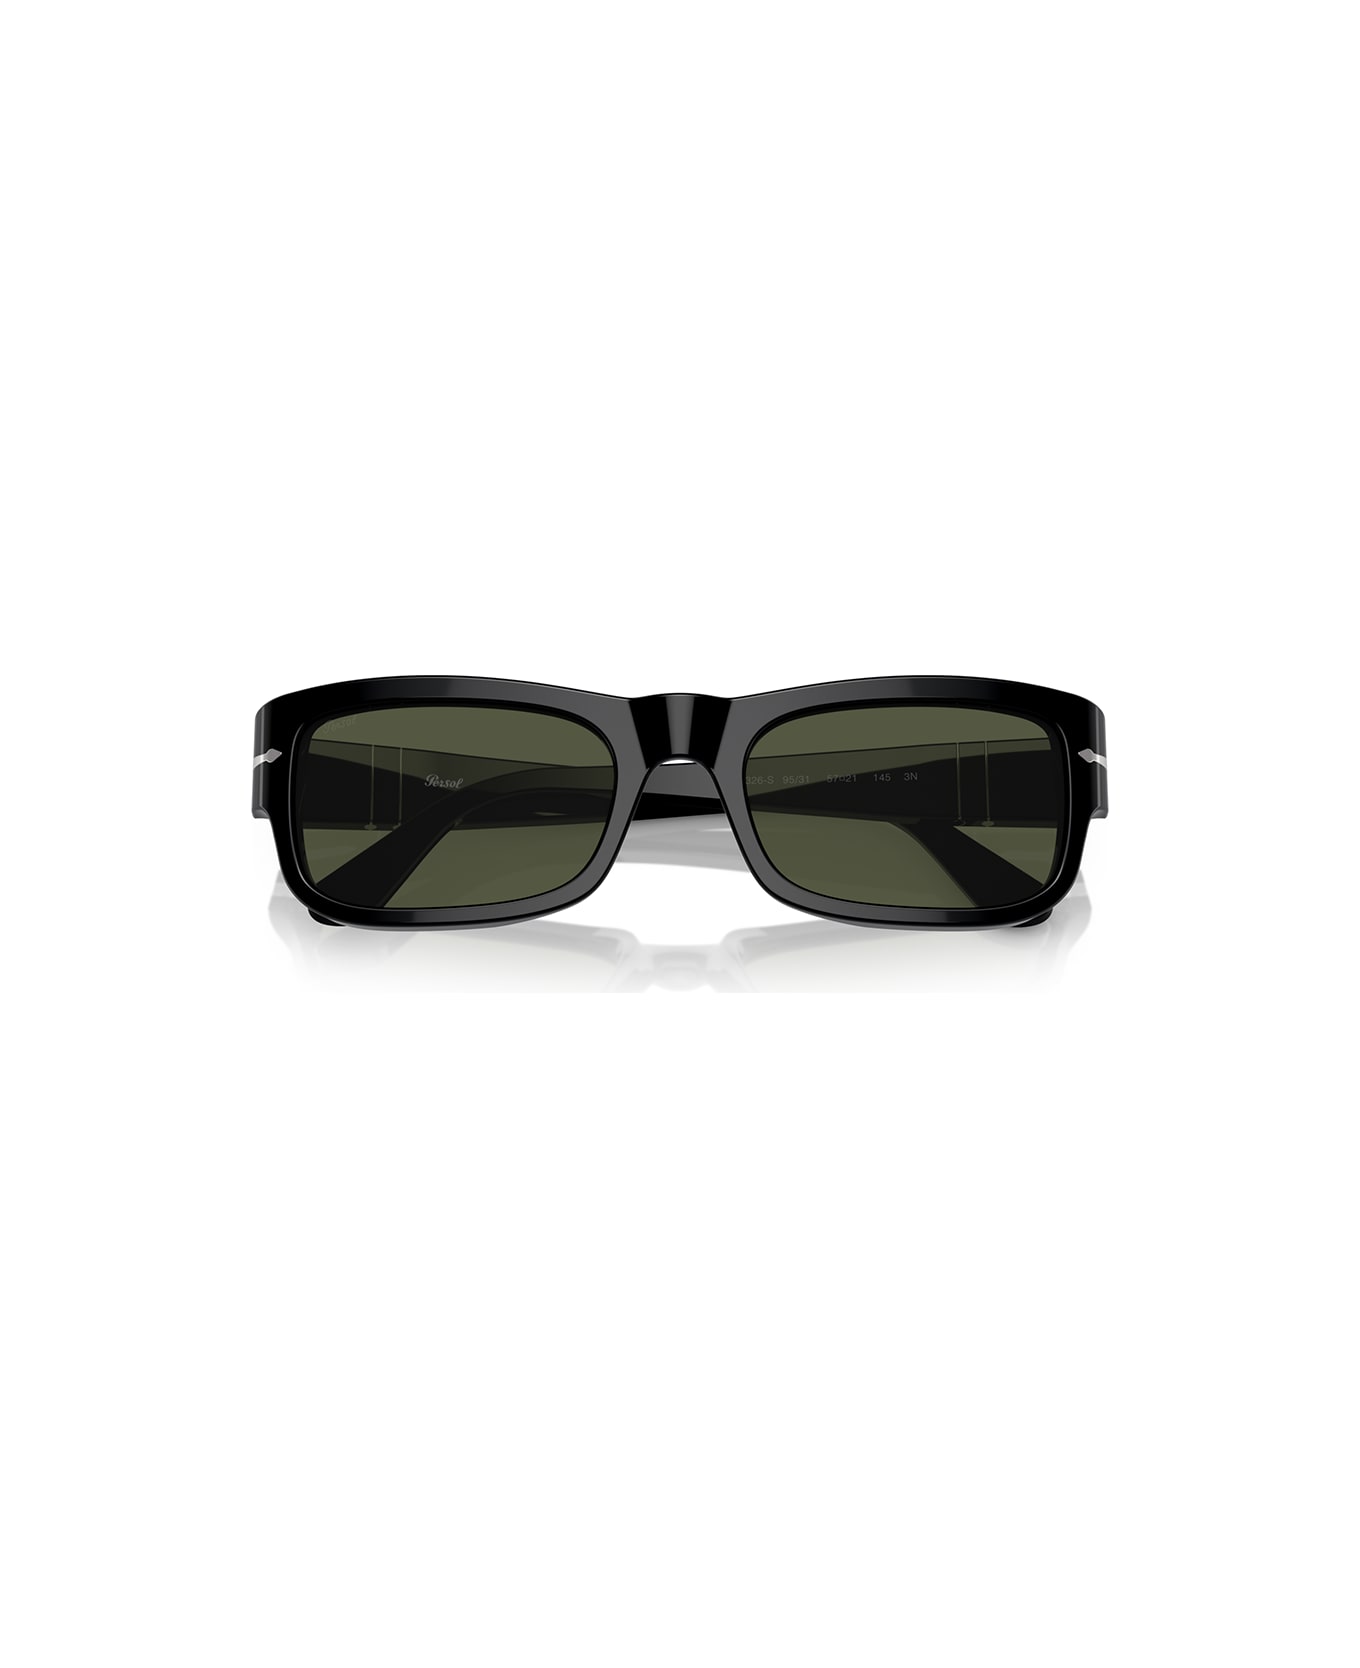 Persol Sunglasses - Nero/Verde